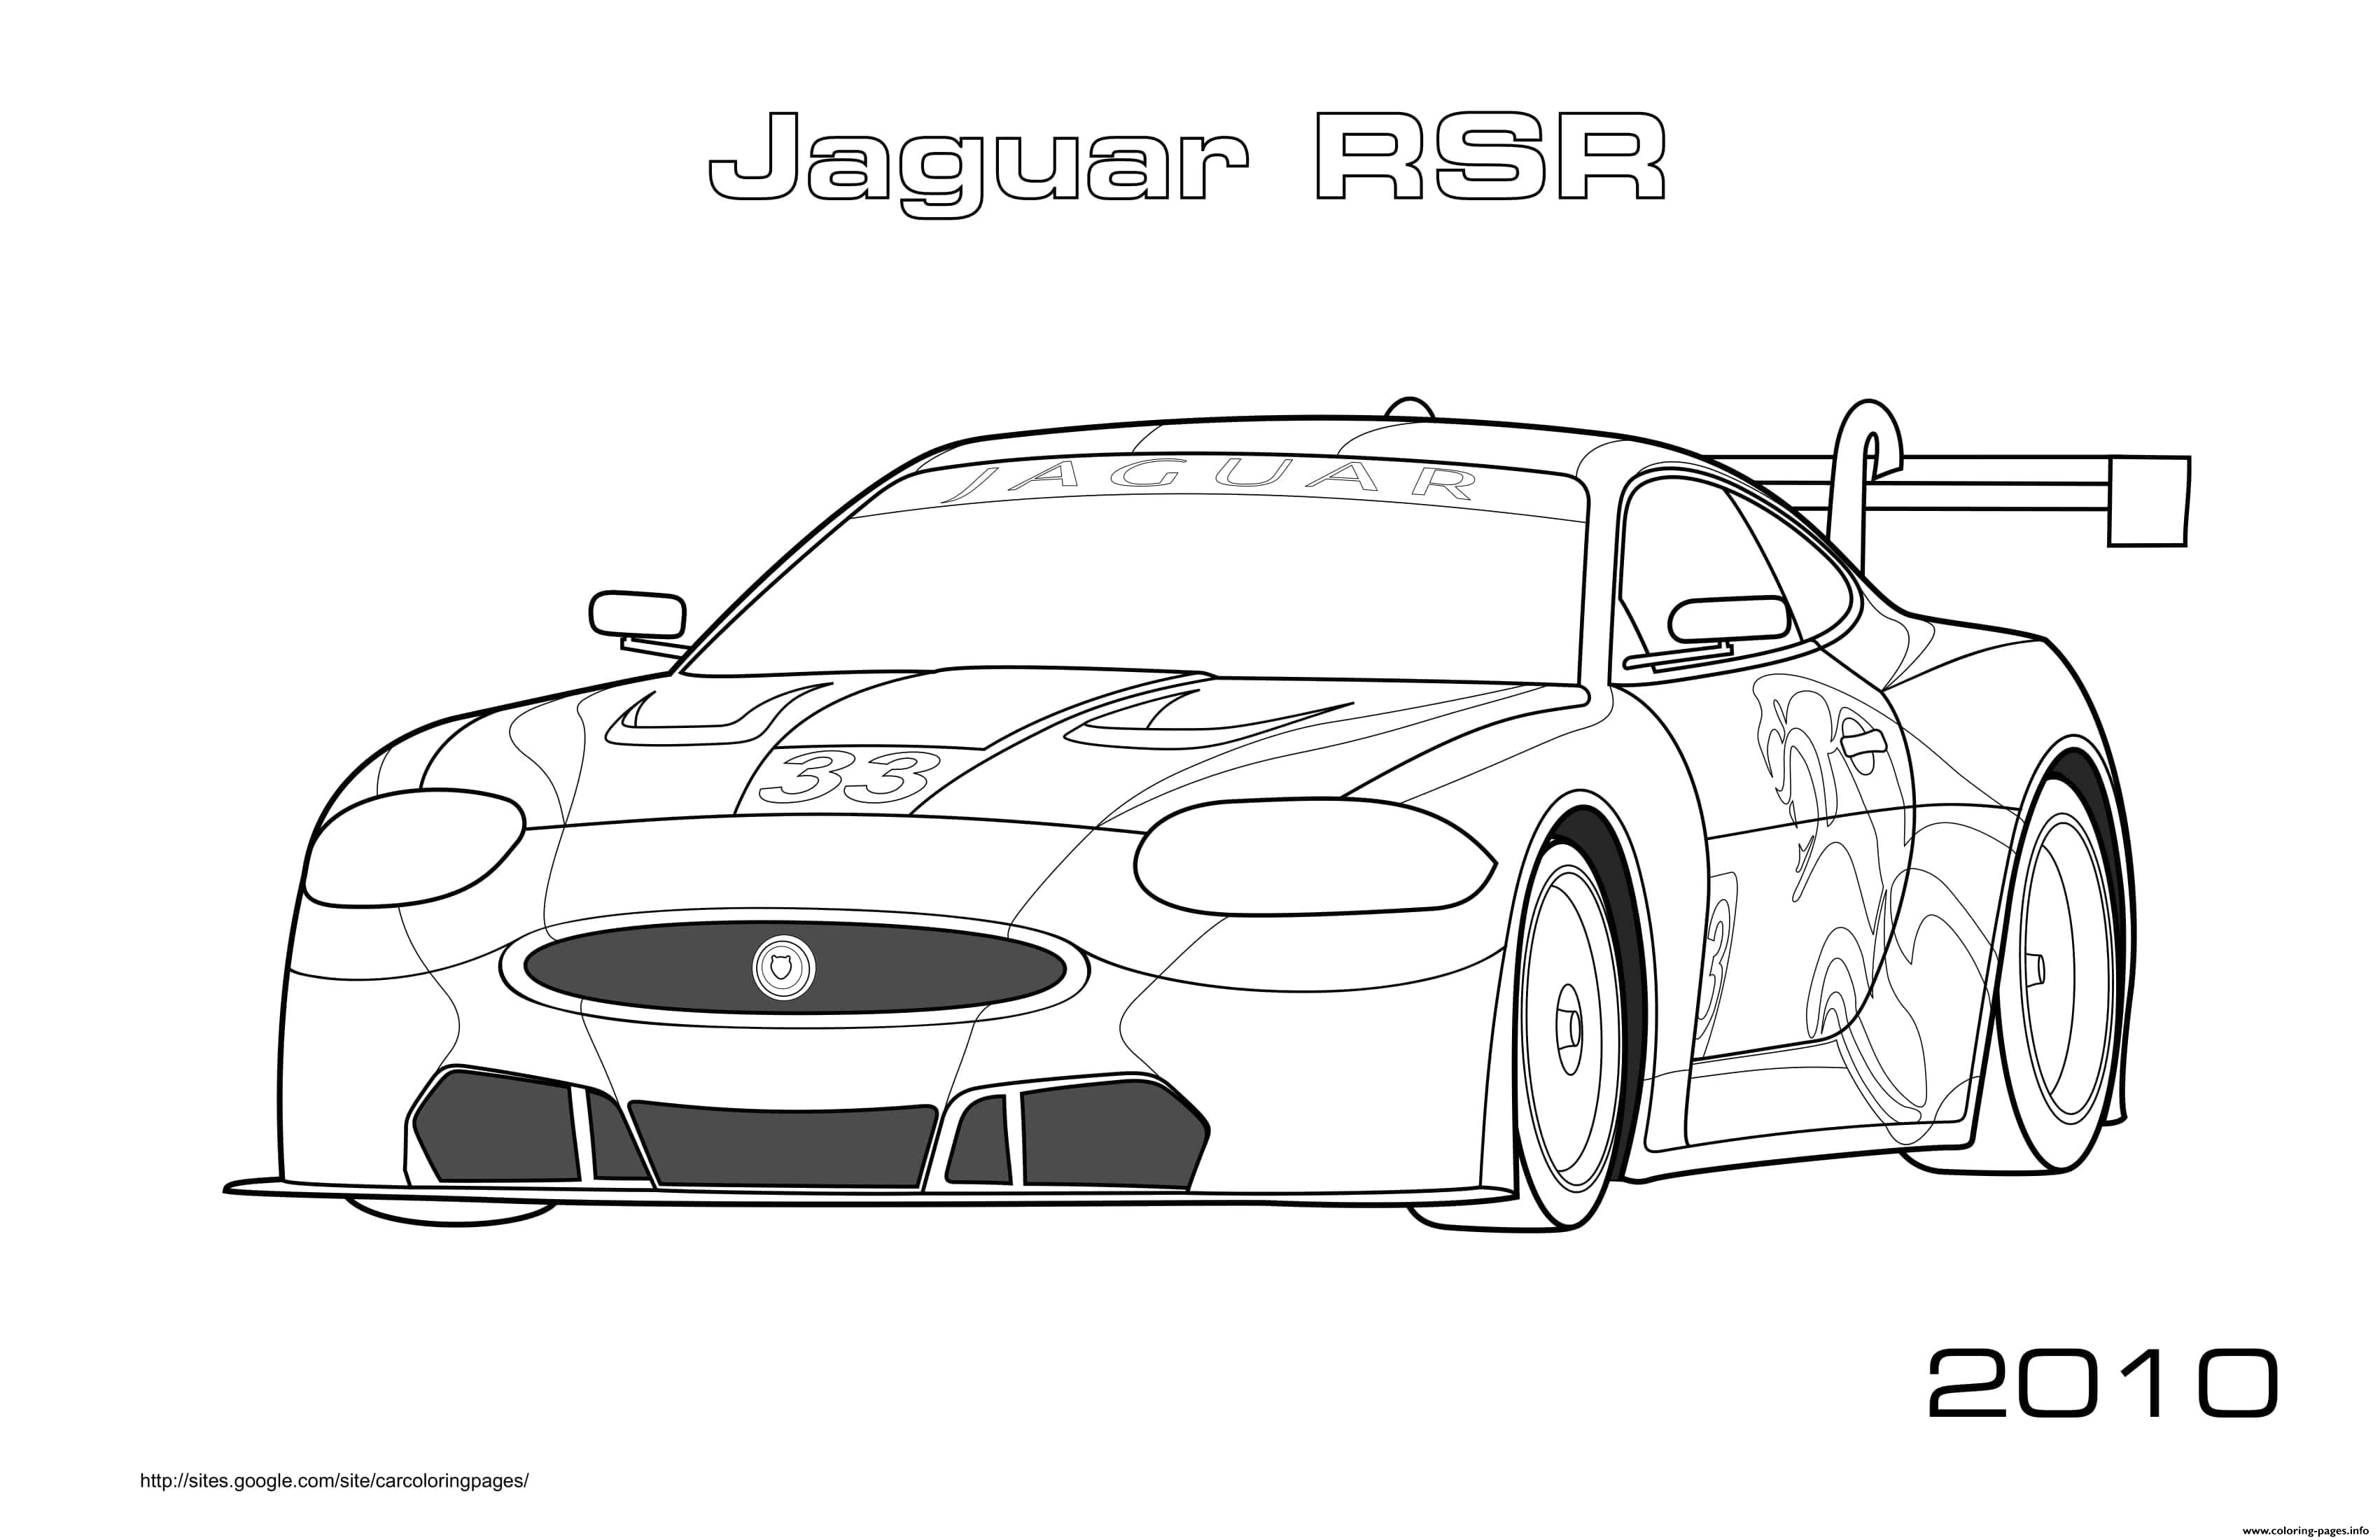 Jaguar Rsr 2010 coloring